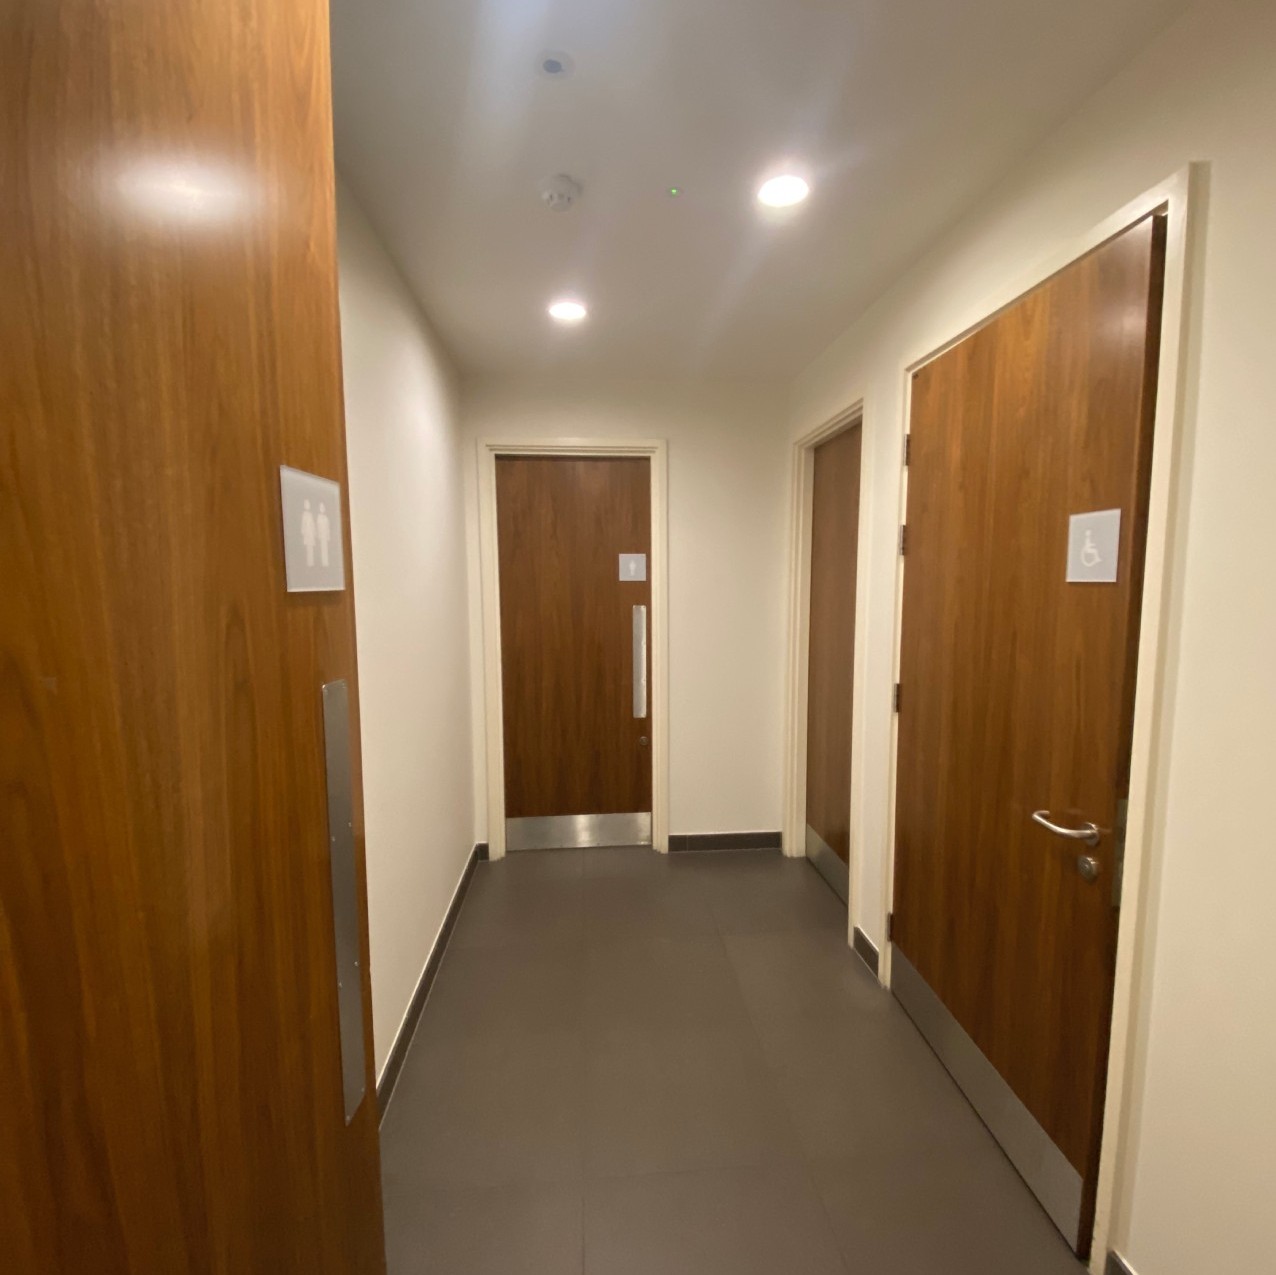 Toilet corridor with doors to accessible, women's and men's toilets